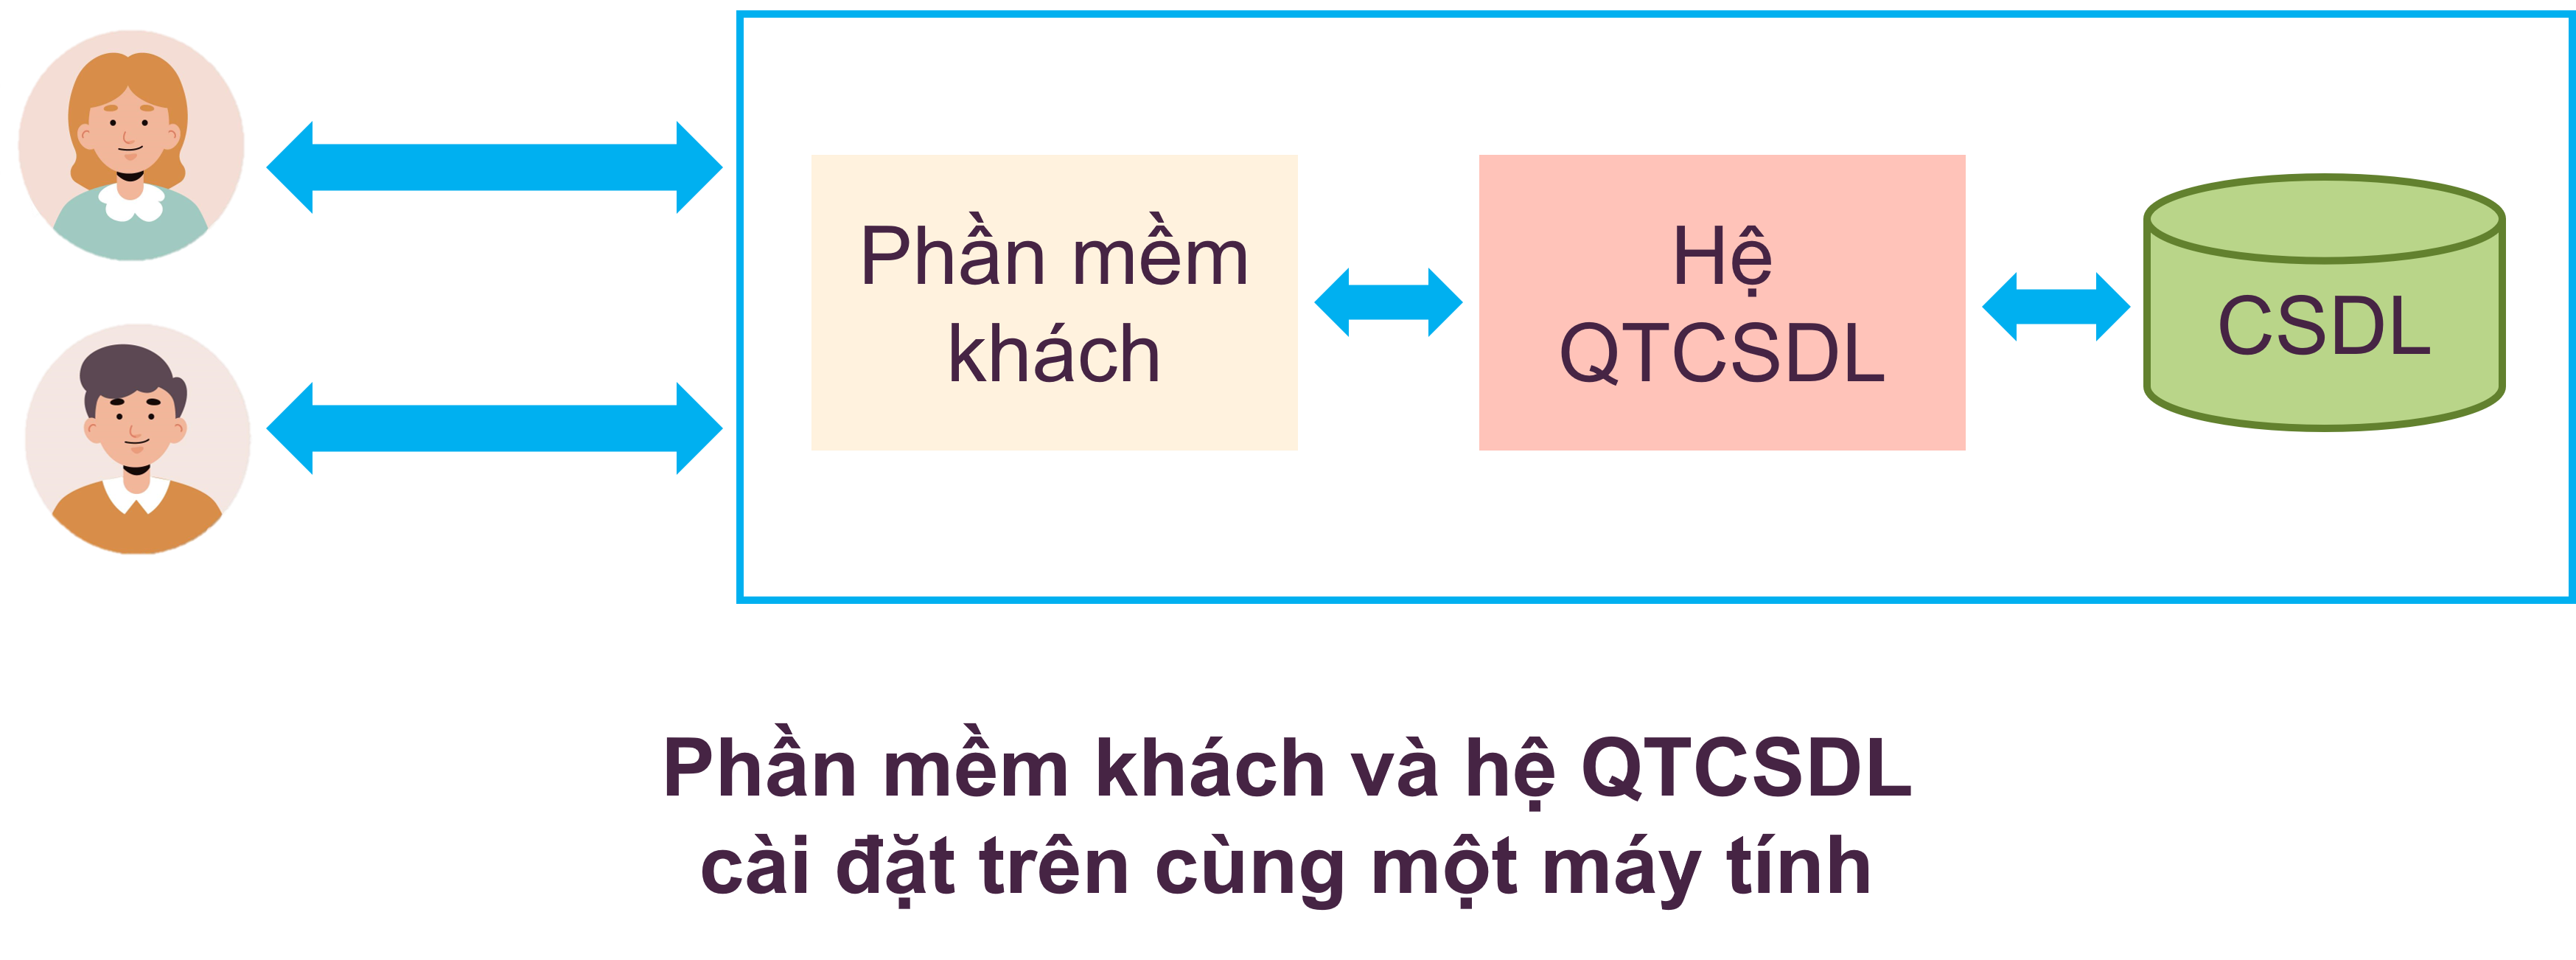 Phần mềm khách và hệ QTCSDL cài đặt trên cùng một máy tính